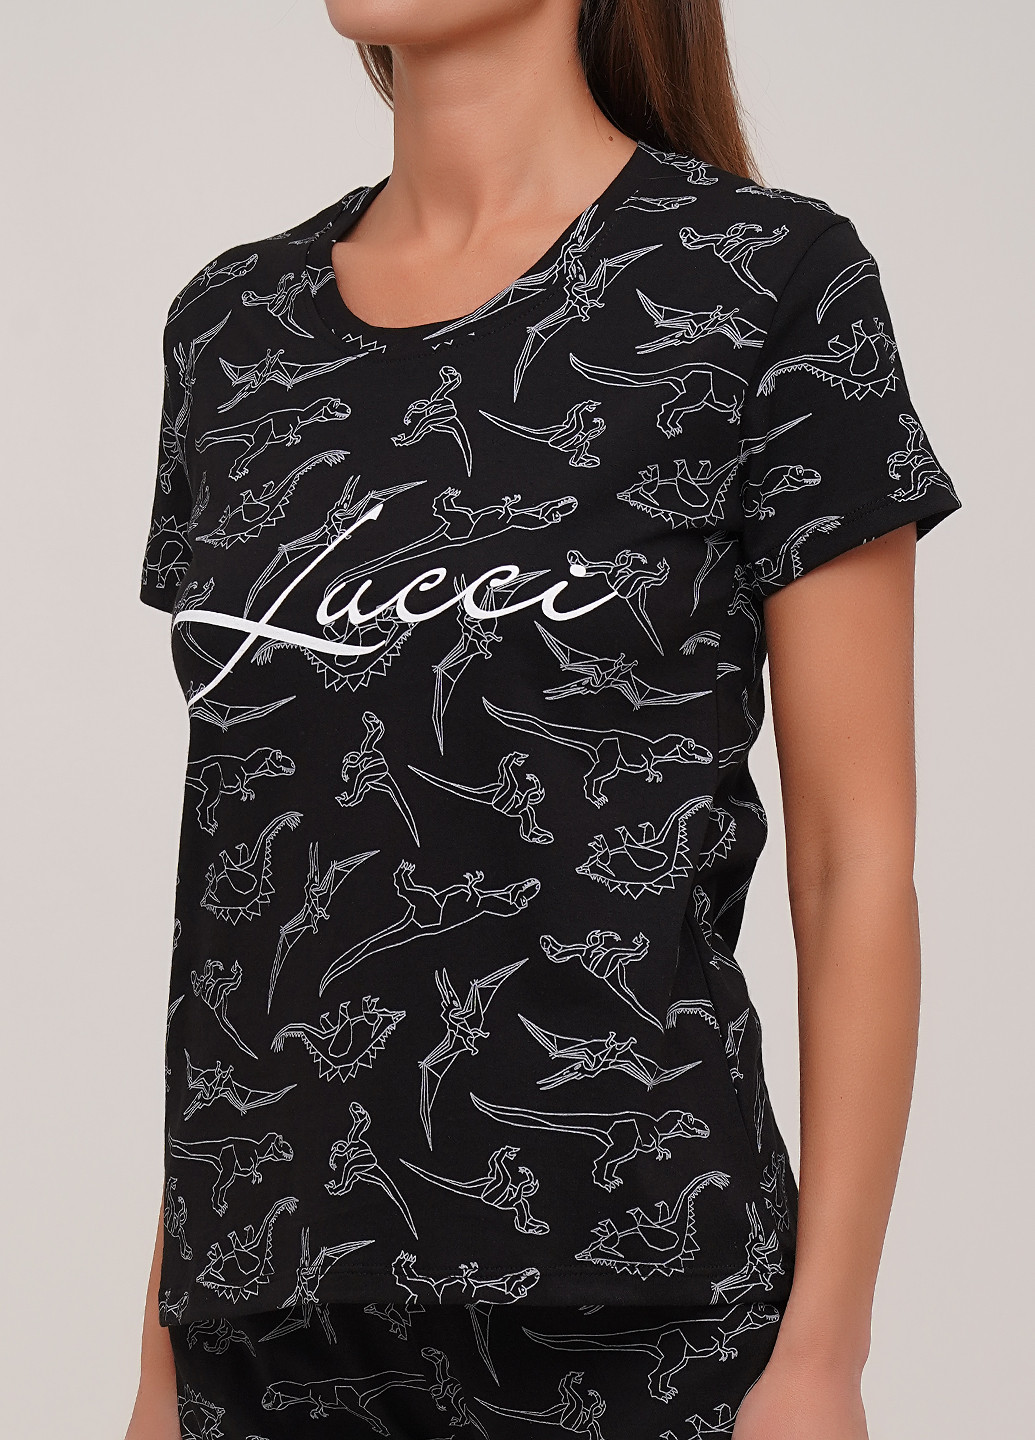 Черная всесезон пижама (футболка, шорты) футболка + шорты Lucci